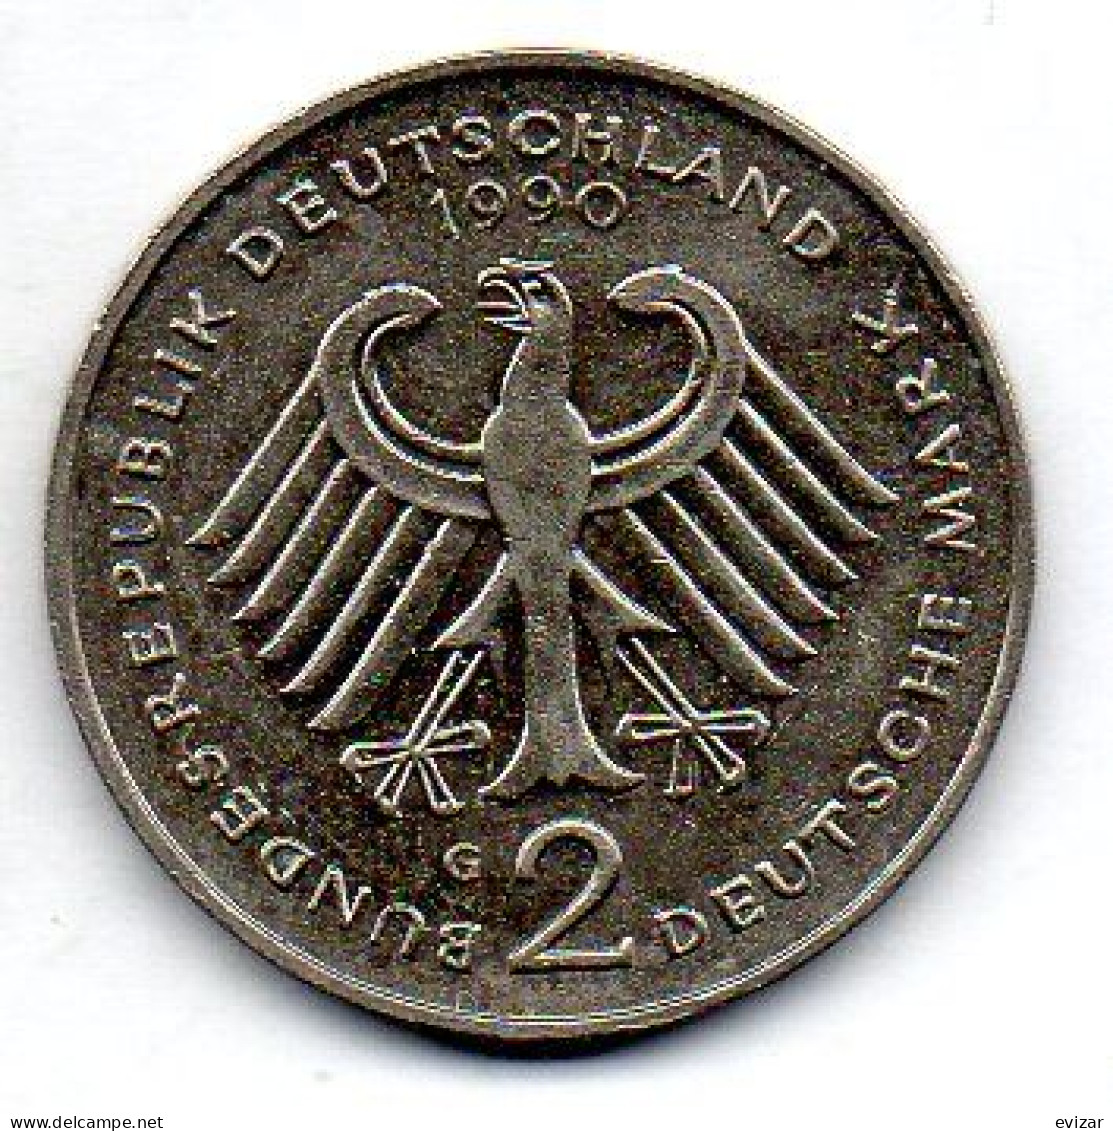 GERMANY - FEDERAL REPUBLIC, 2 Mark, Copper-Nickel, Year 1990-G, KM # 175 - 2 Marchi